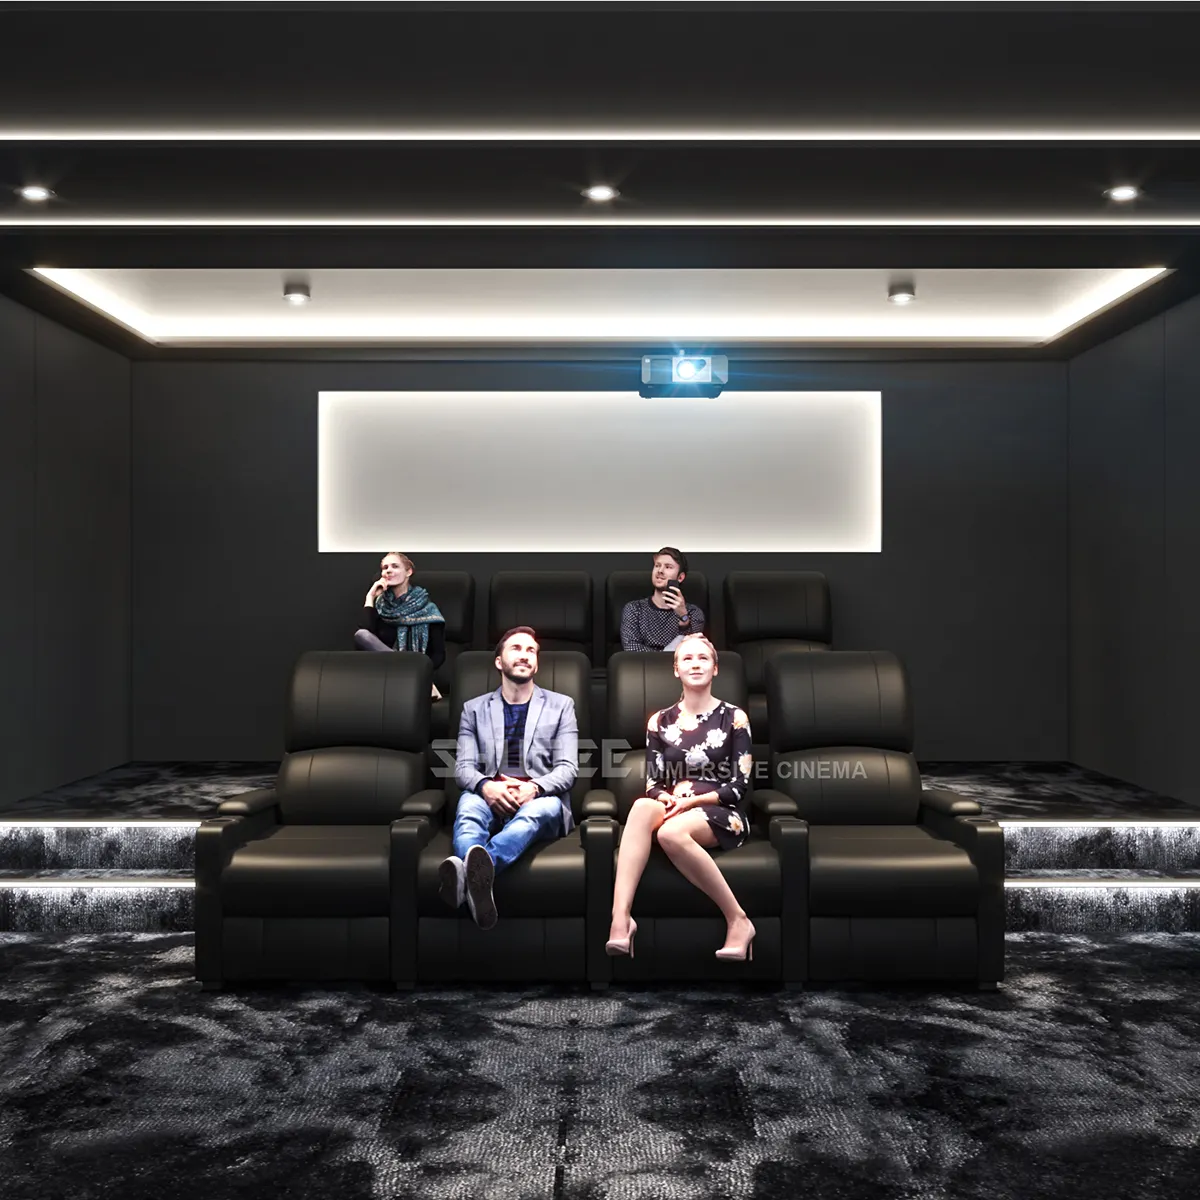 עיצוב חדש מערכת קולנוע ביתי אביזרי תיאטרון ספה ישיבה עור אלקטרוני לטלוויזיה, סרט